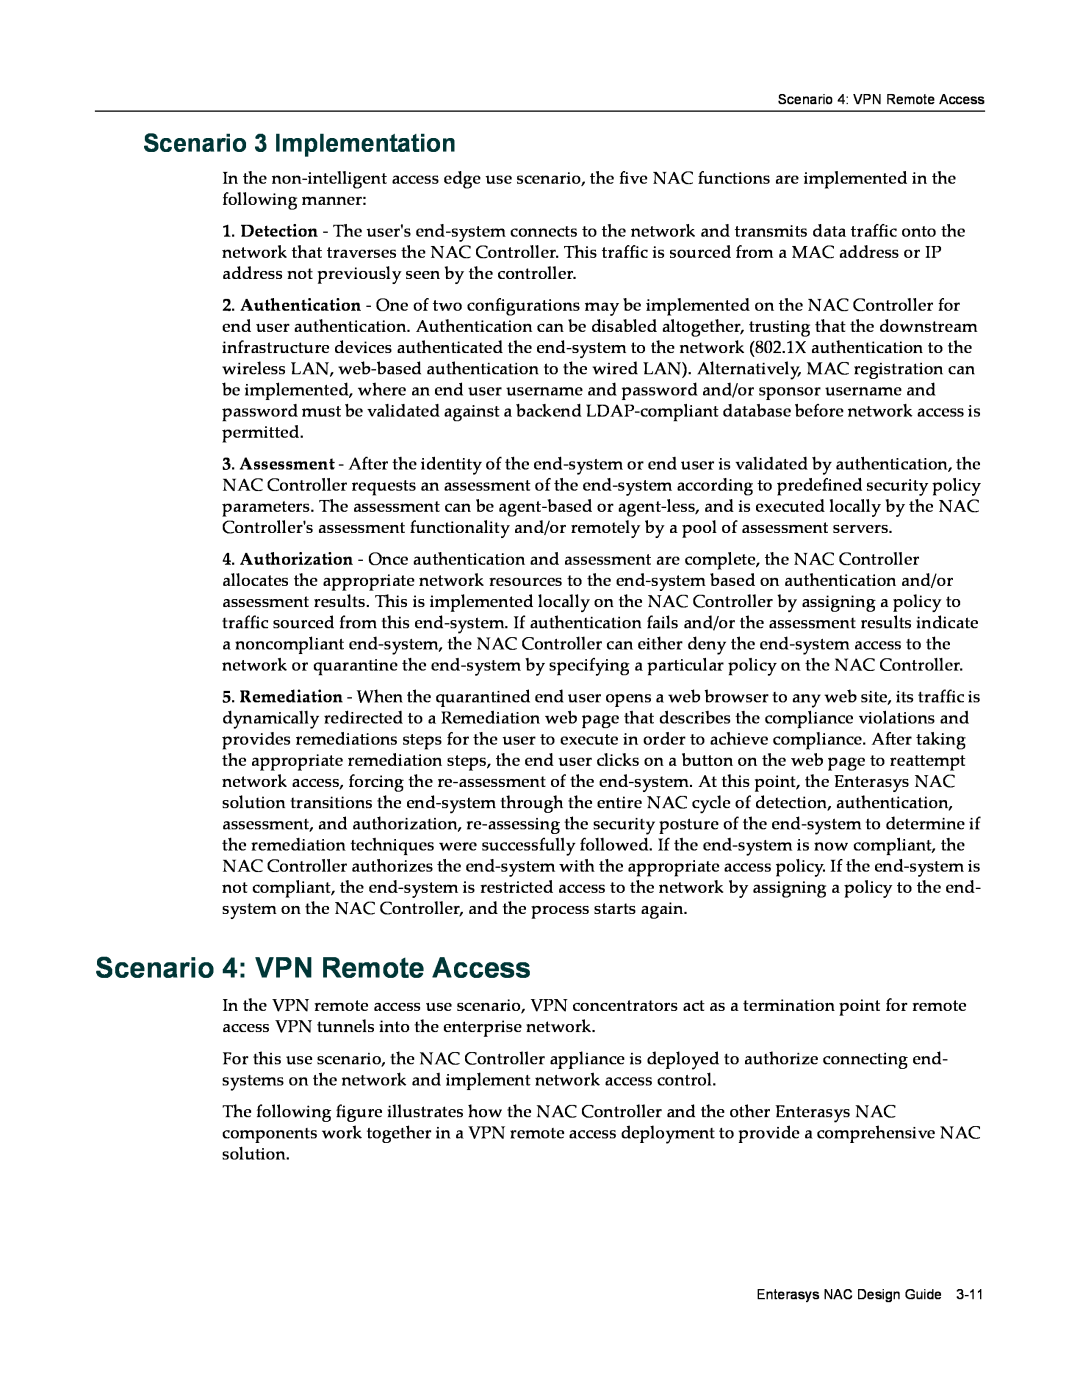 Enterasys Networks 9034385 manual Scenario 4 VPN Remote Access, Scenario 3 Implementation 